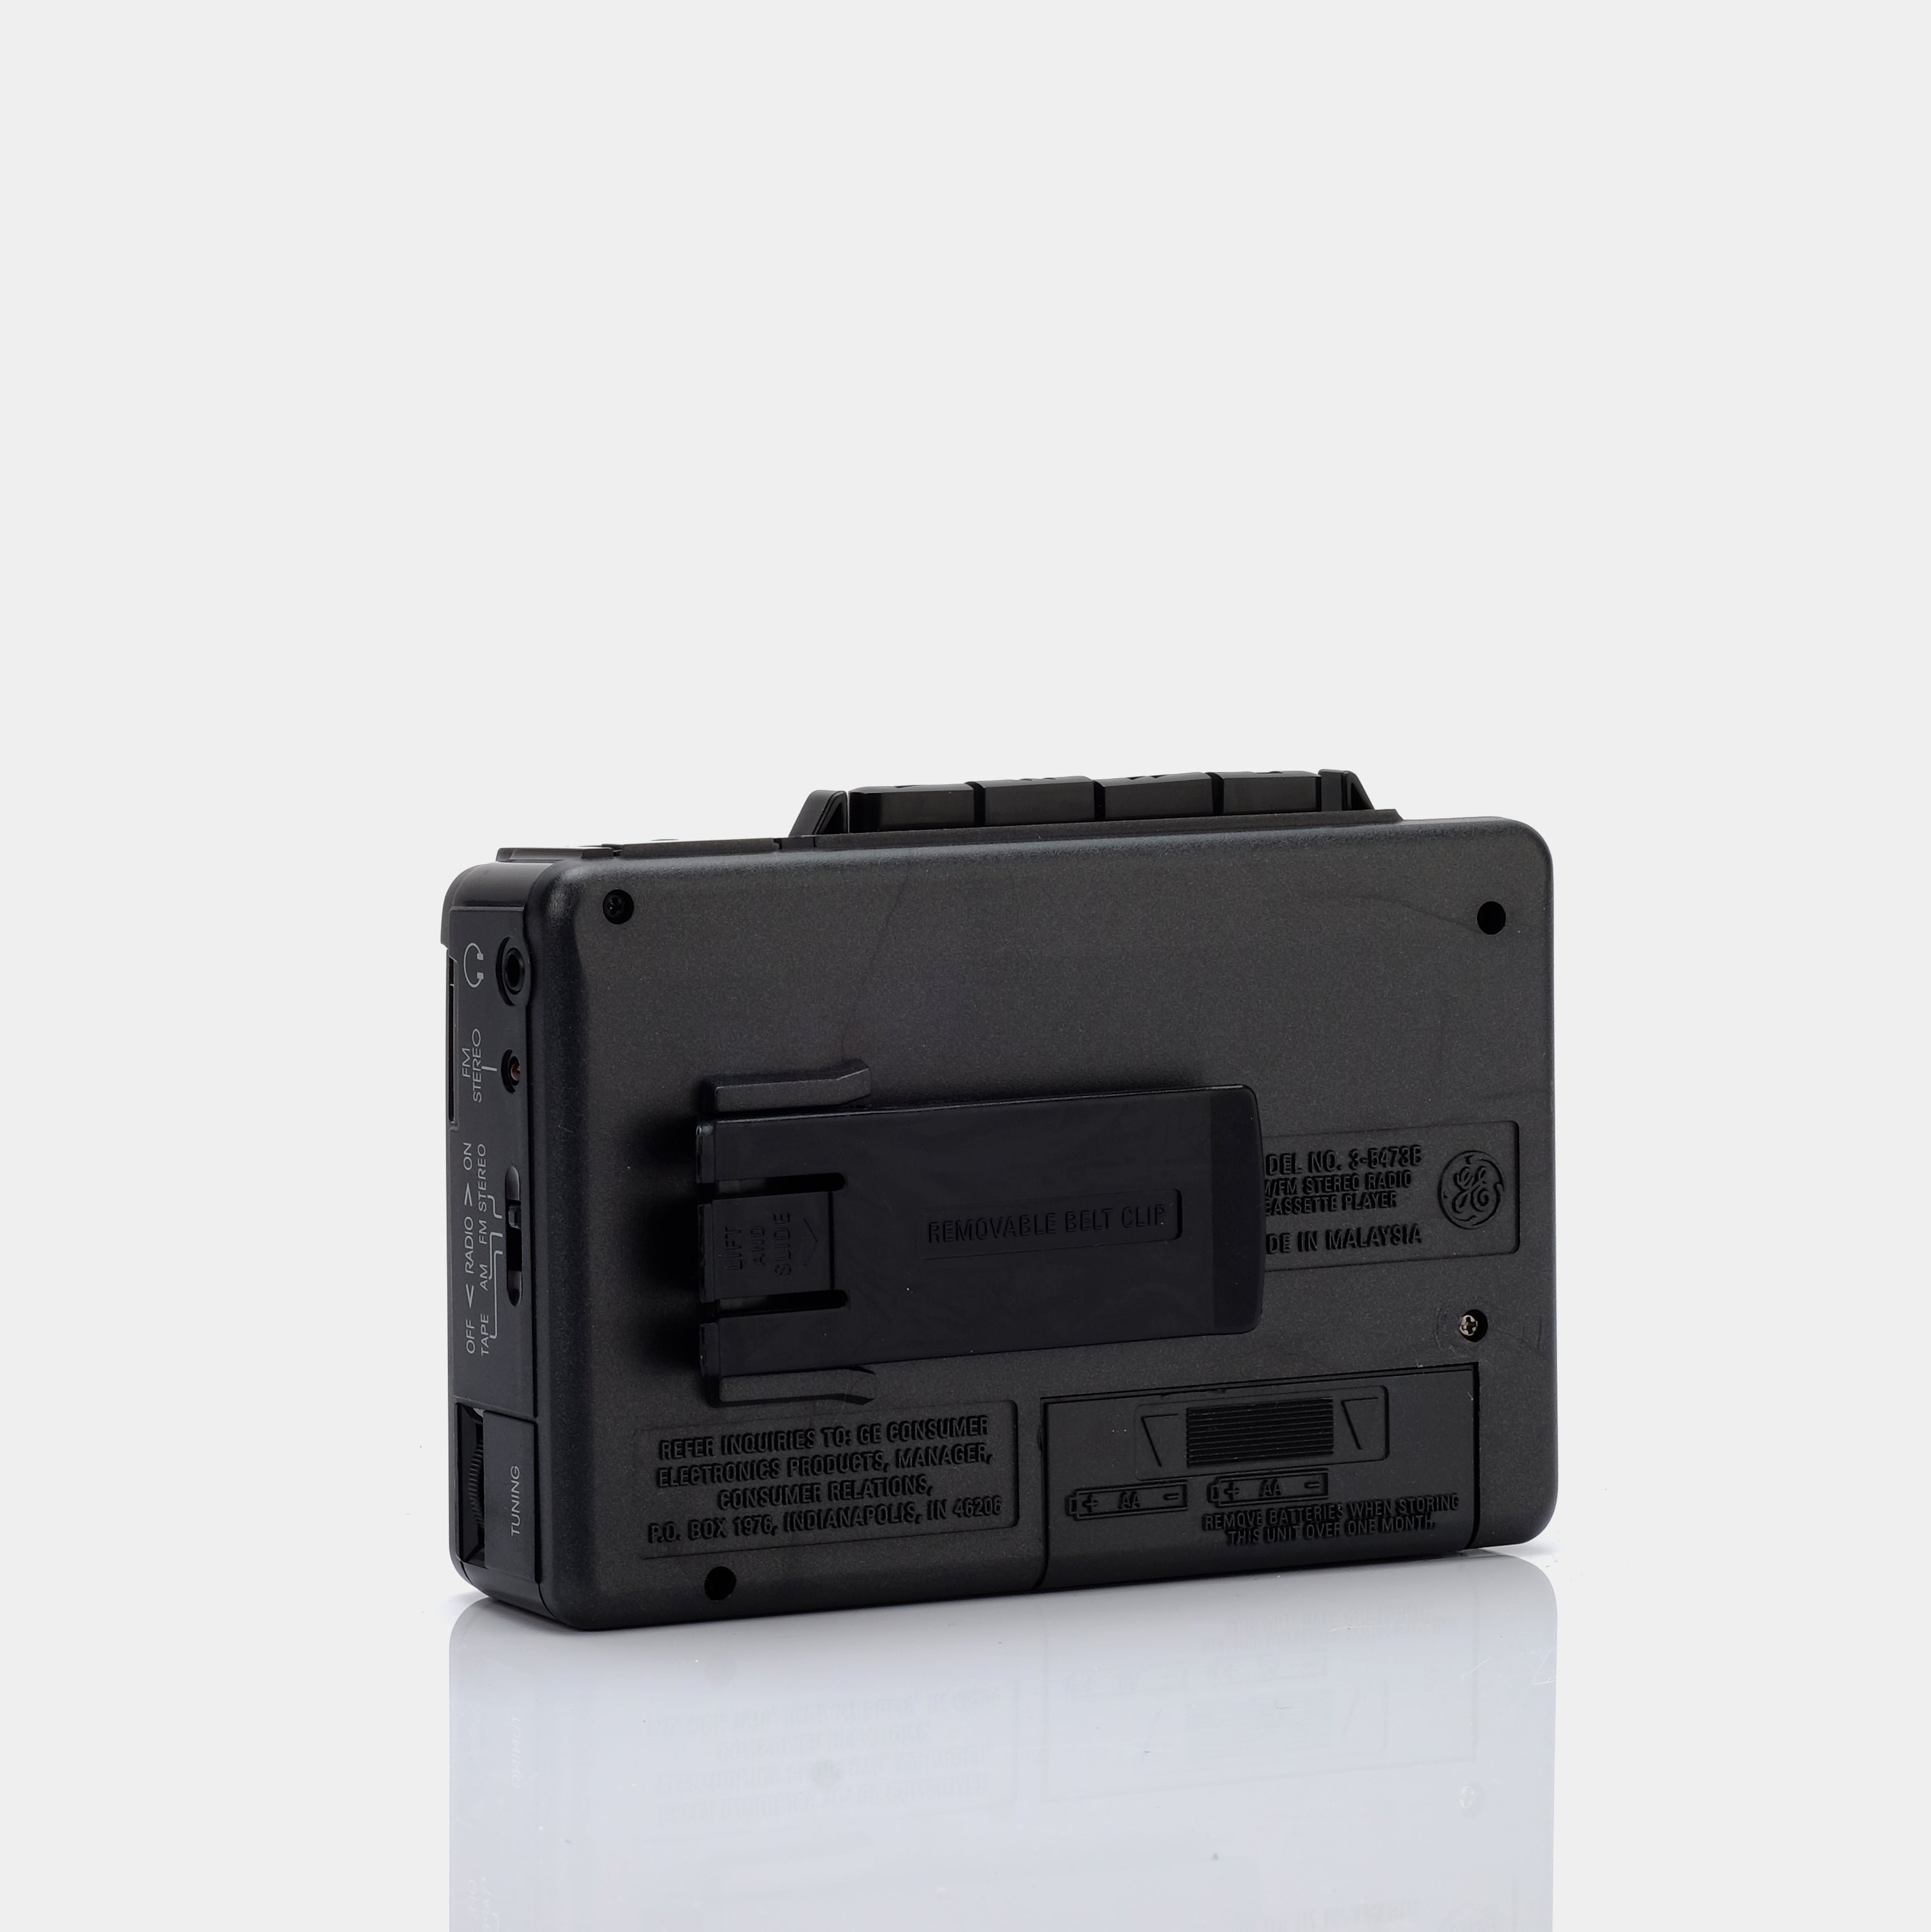 General Electric 3-5473B AM/FM Portable Cassette Player